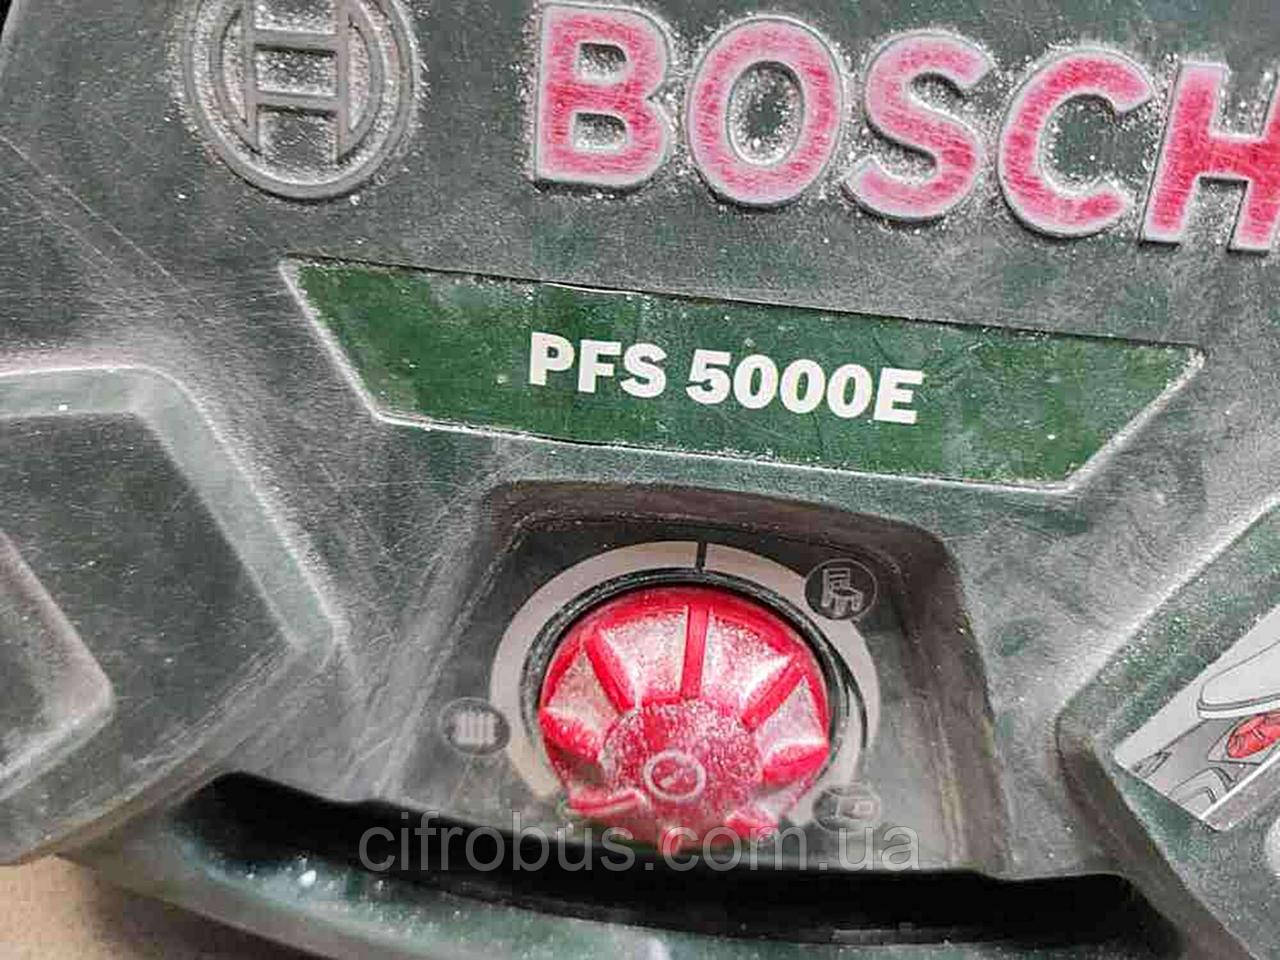 Електричний фарбопульт Б/У Bosch PFS 5000 E